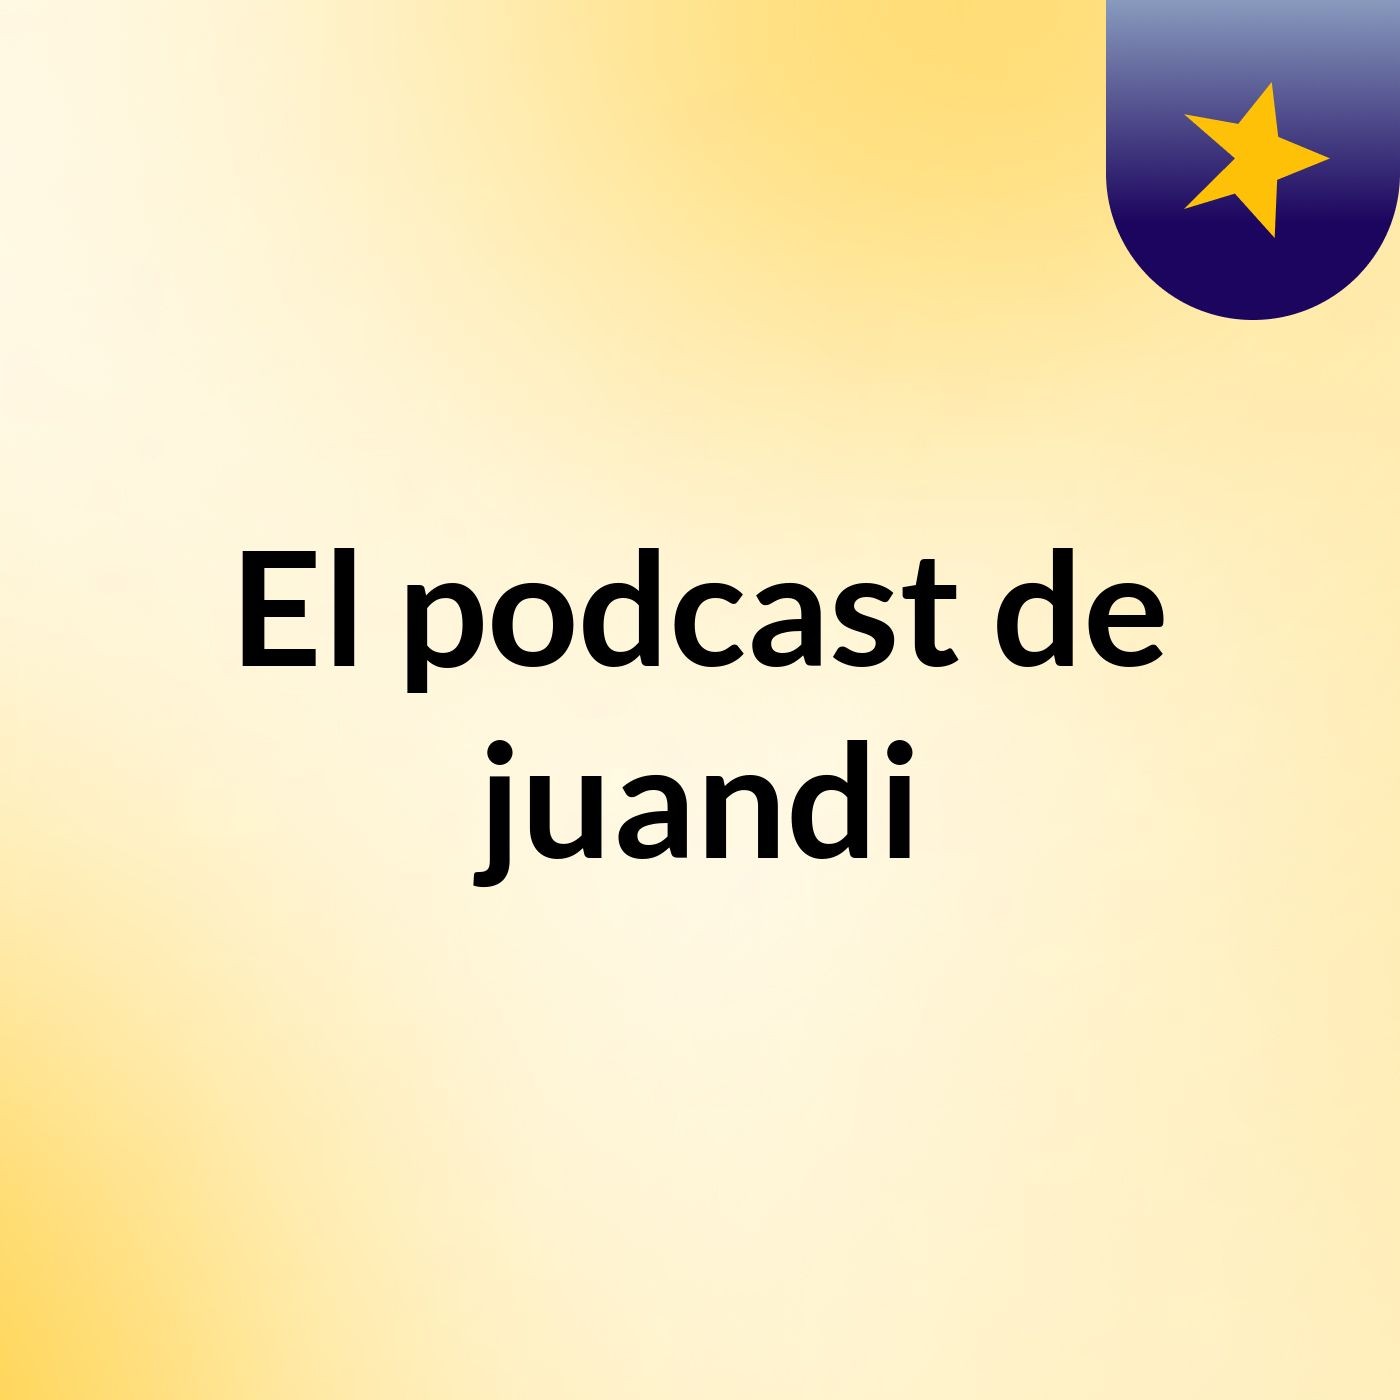 El podcast de juandi